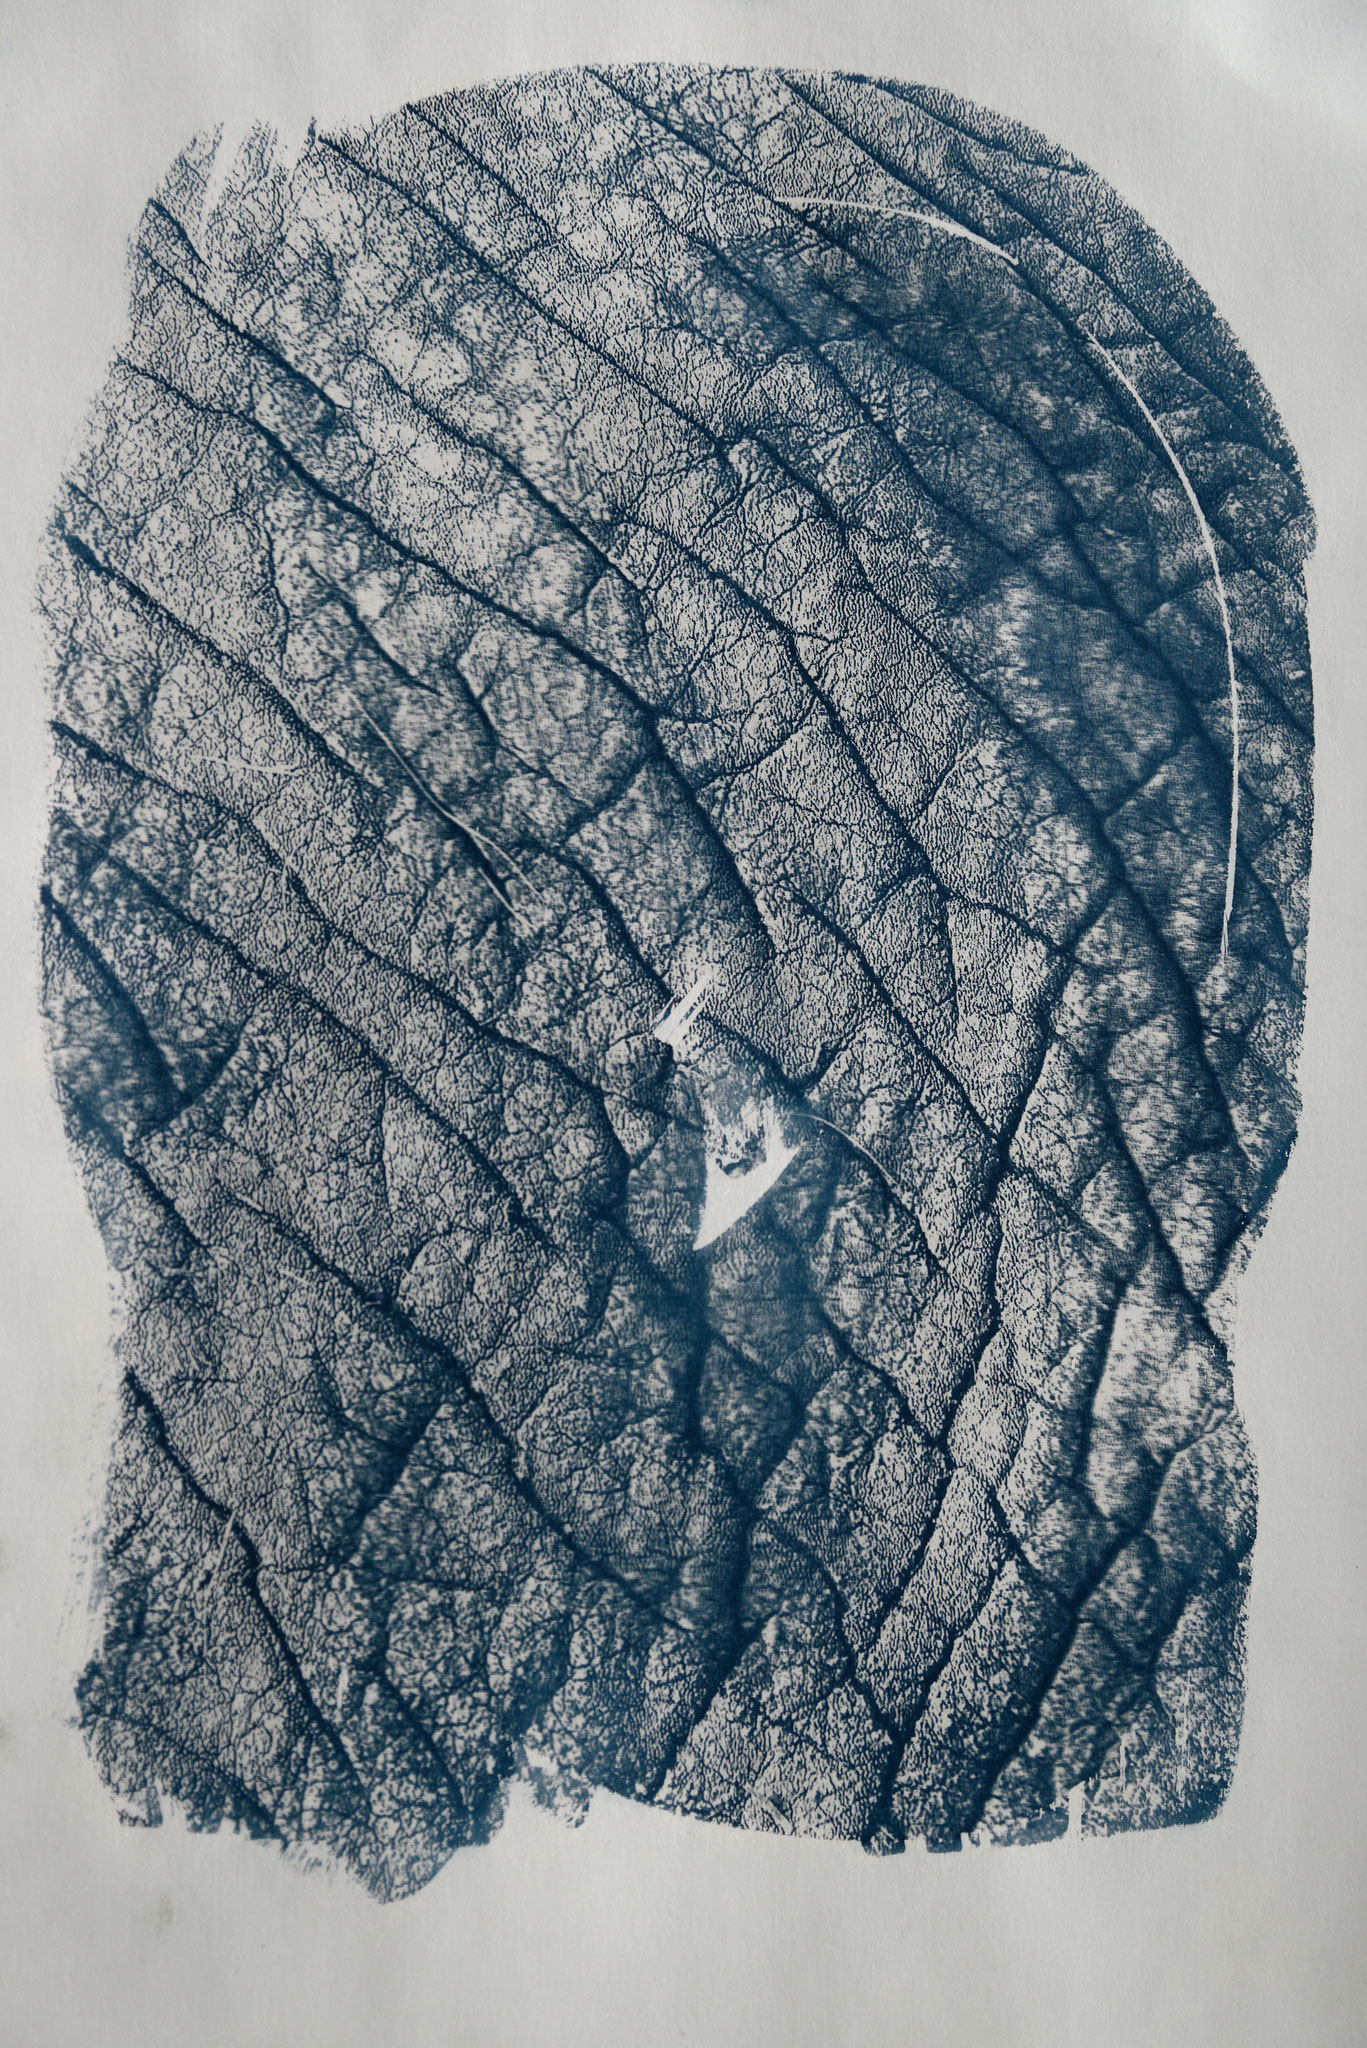 Elefant, Cyanotypie auf Papier, 29x42 cm, 2022